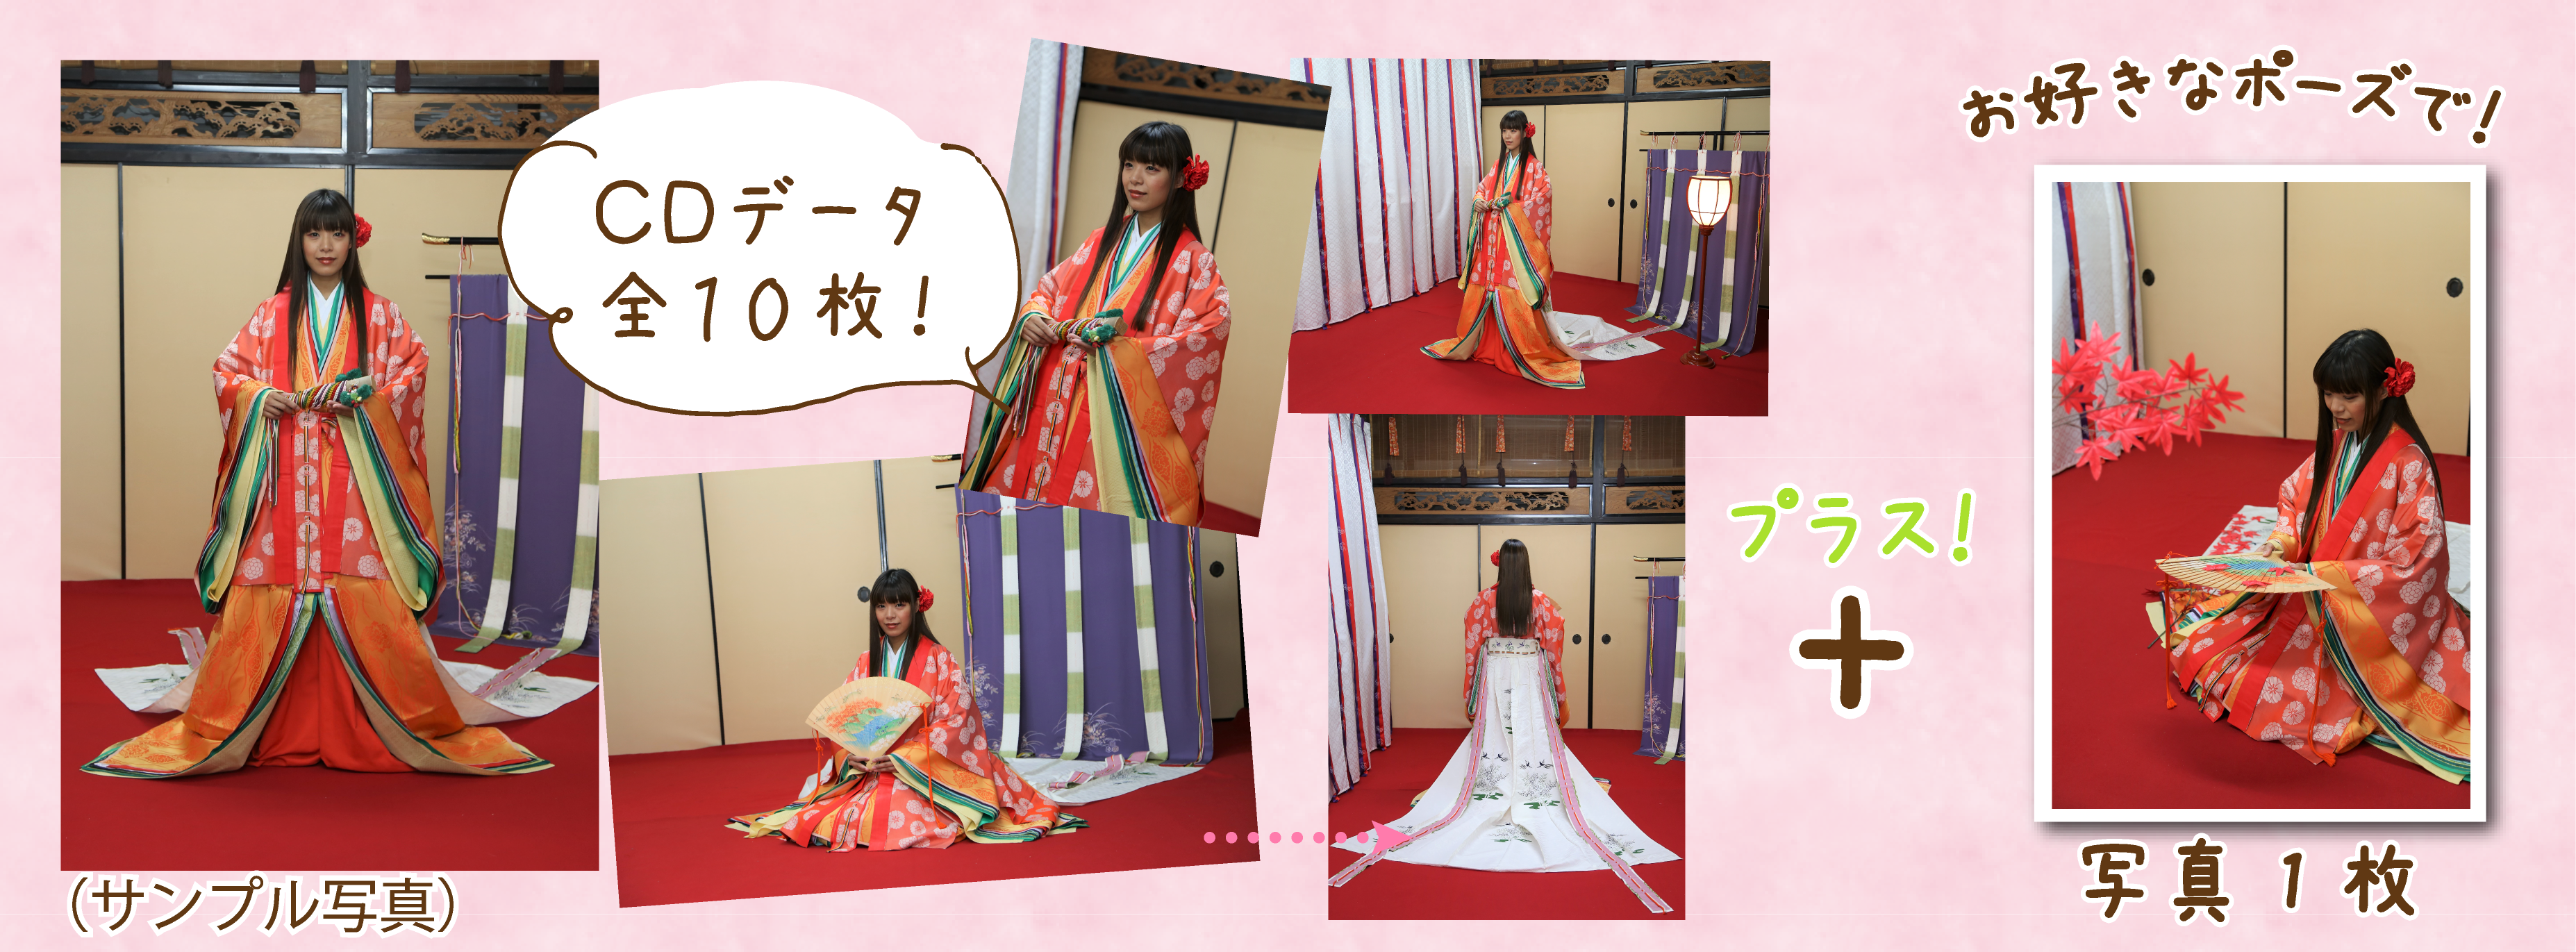 室内プラン 十二単と着物レンタルの雅ゆきで結婚式 京都観光